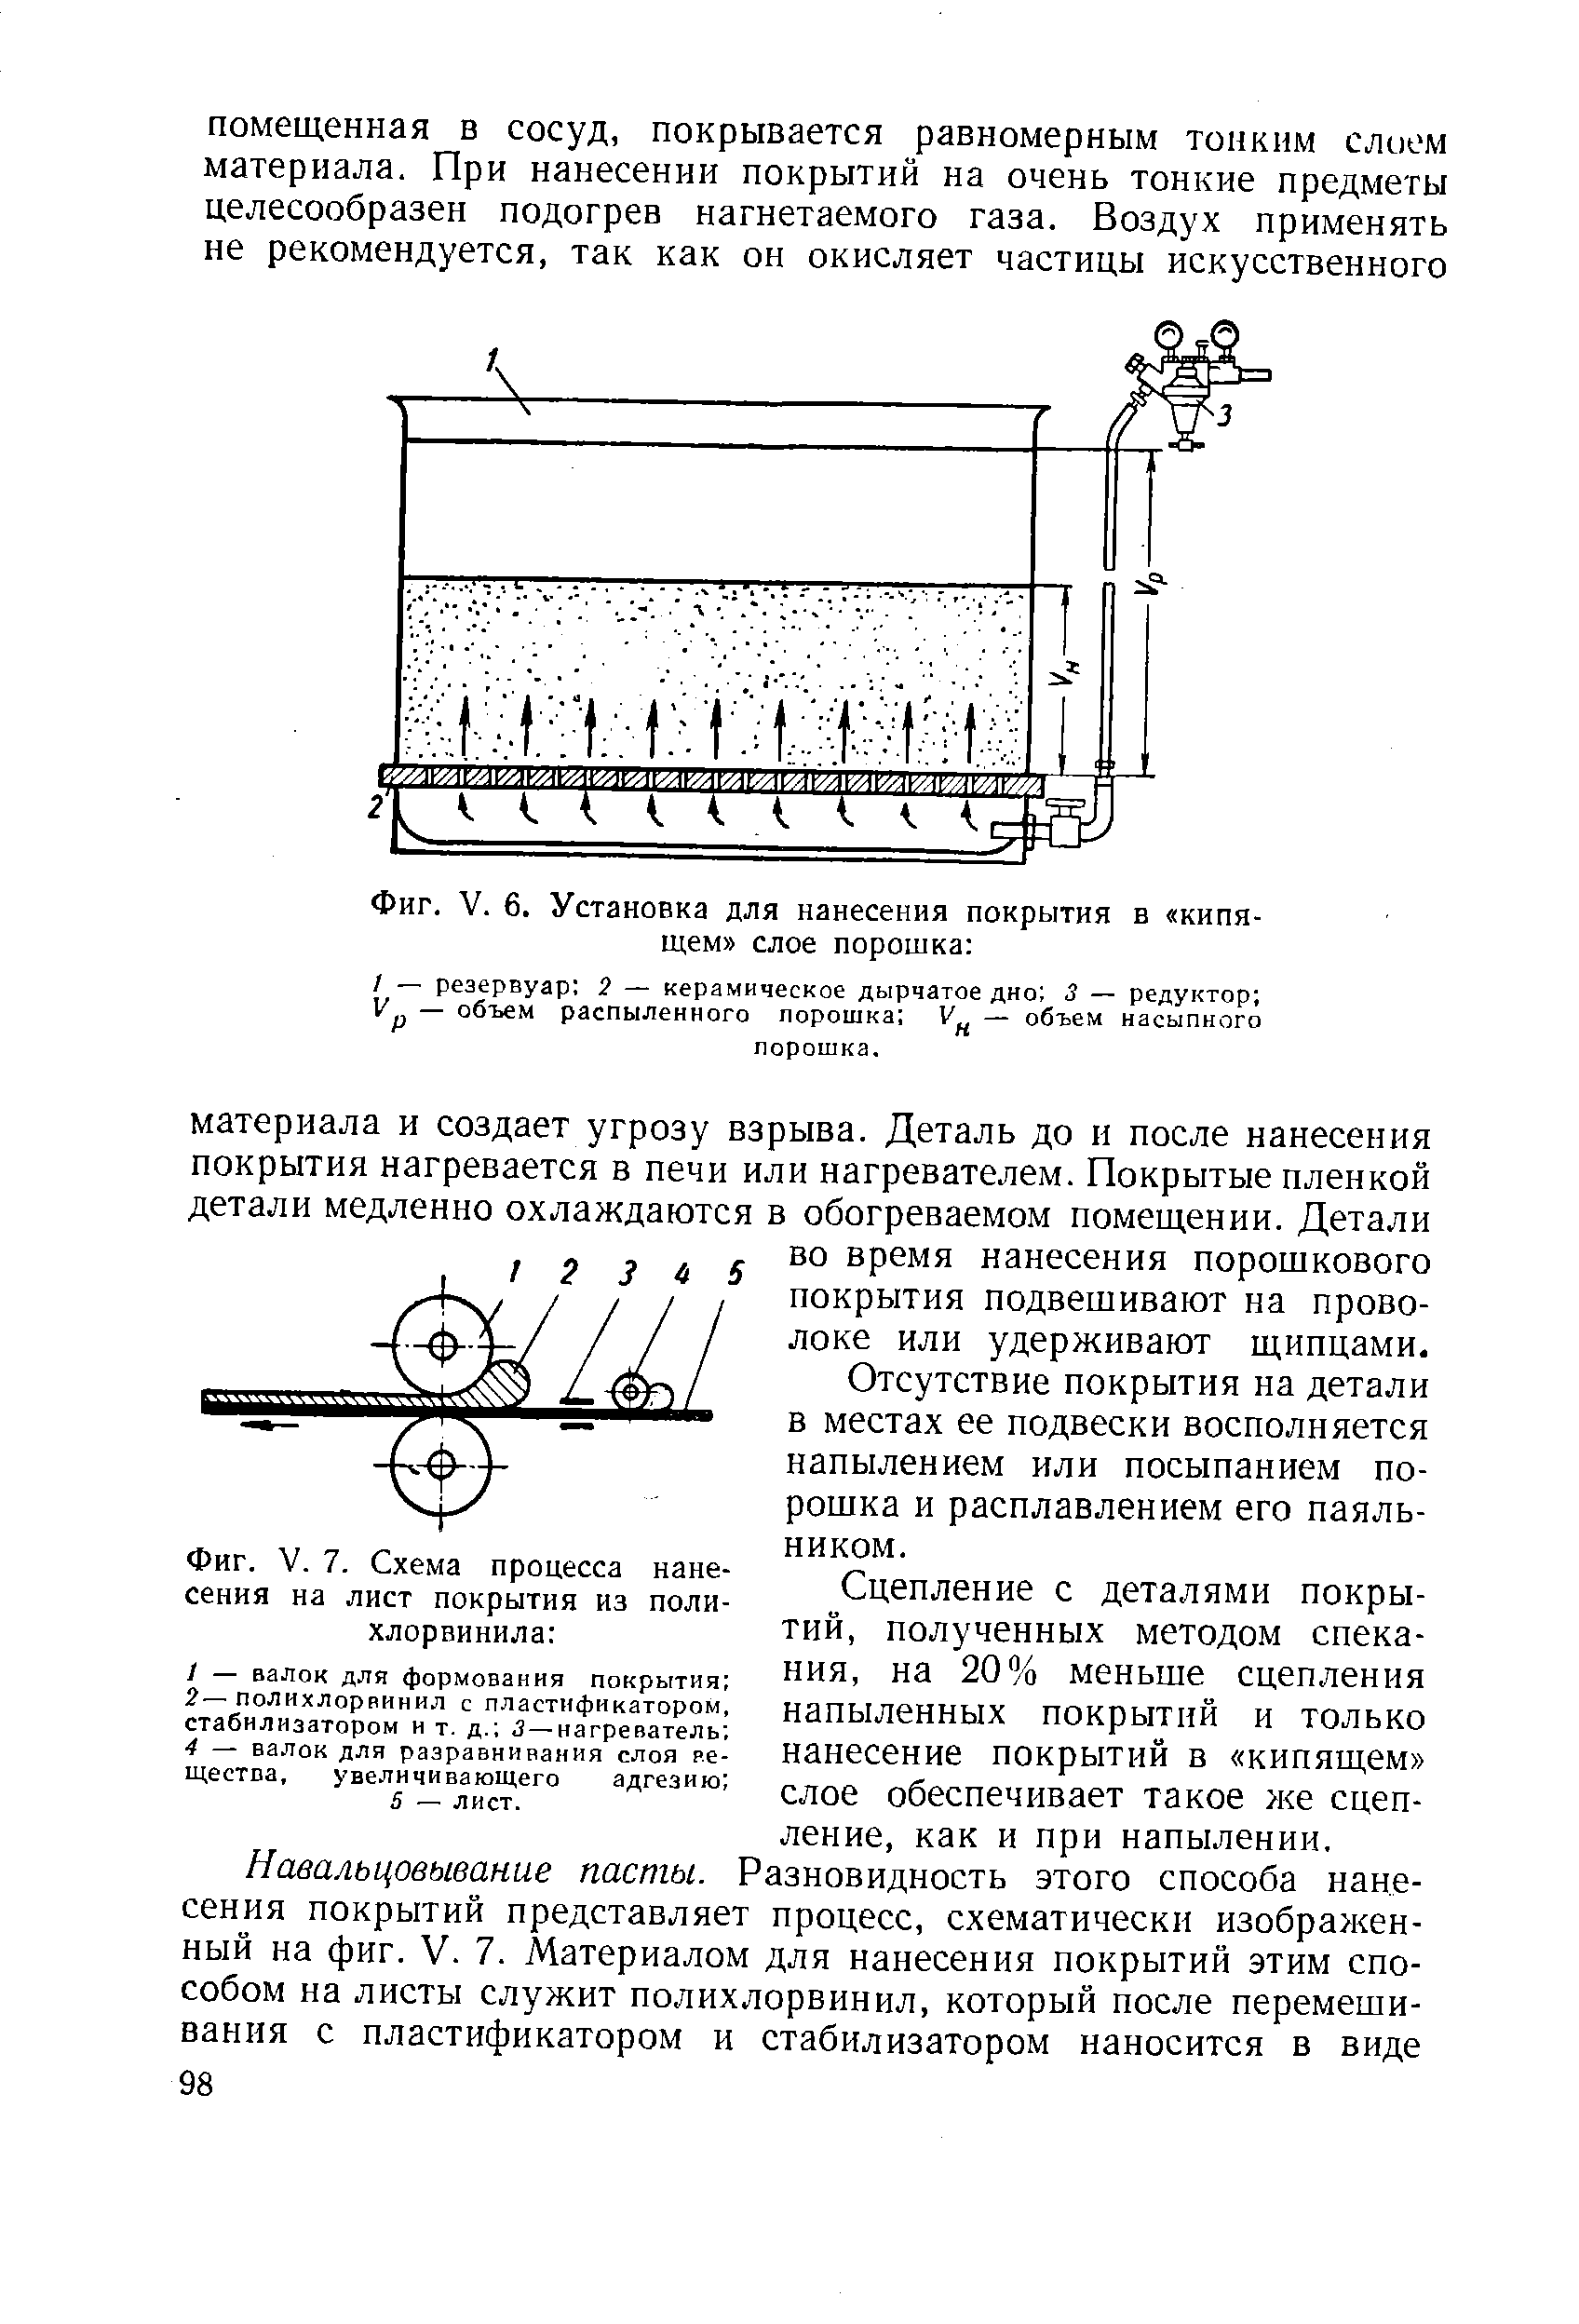 Фиг. V. 7. Схема процесса нанесения на лист покрытия из полихлорвинила 
